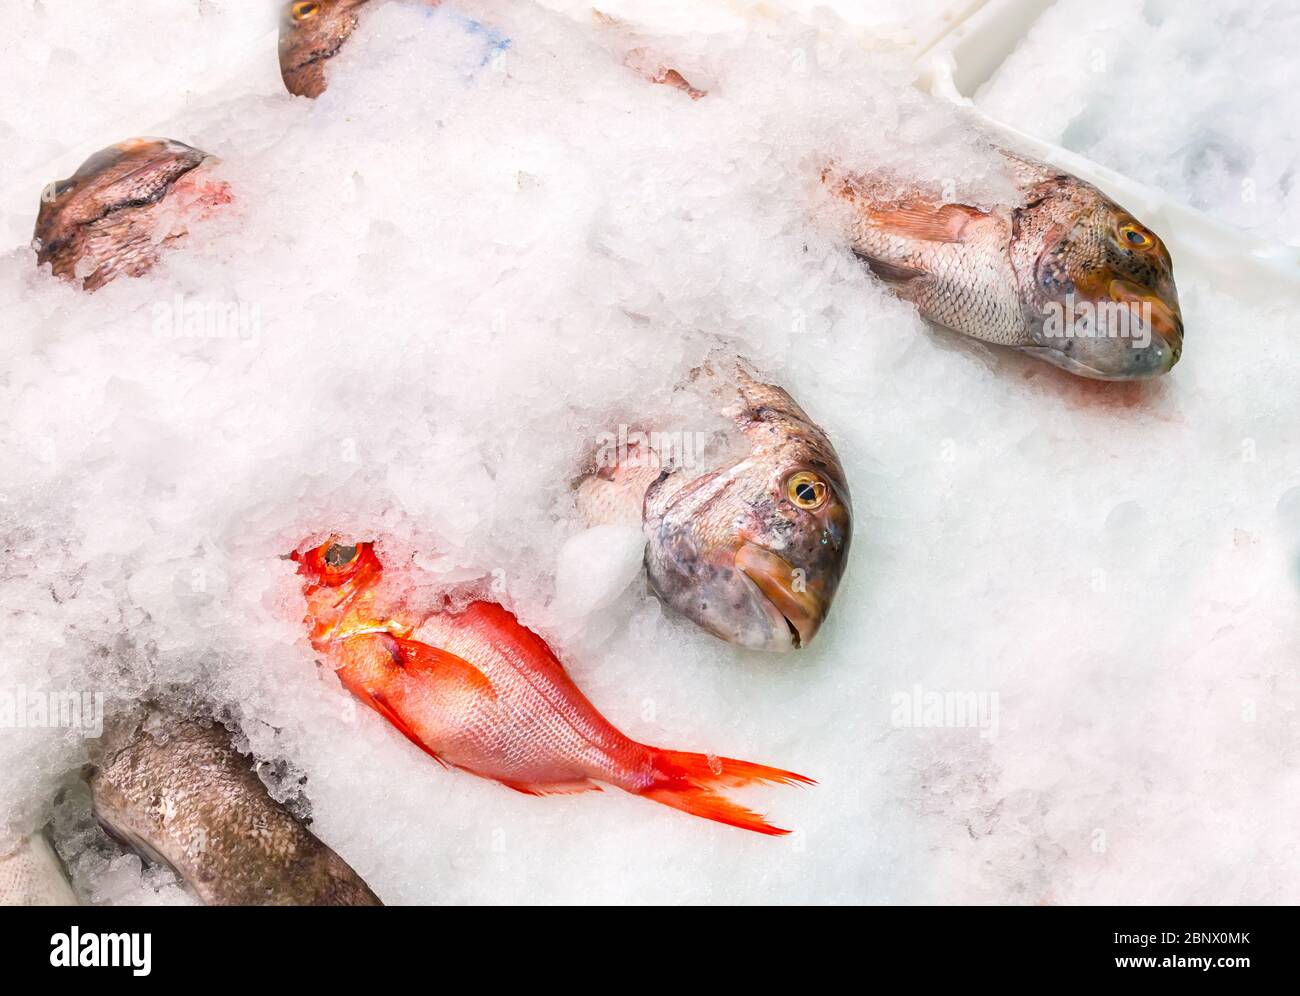 Pesca en hielo en el mercado árabe de Santa Cruz de Tenerife Foto de stock